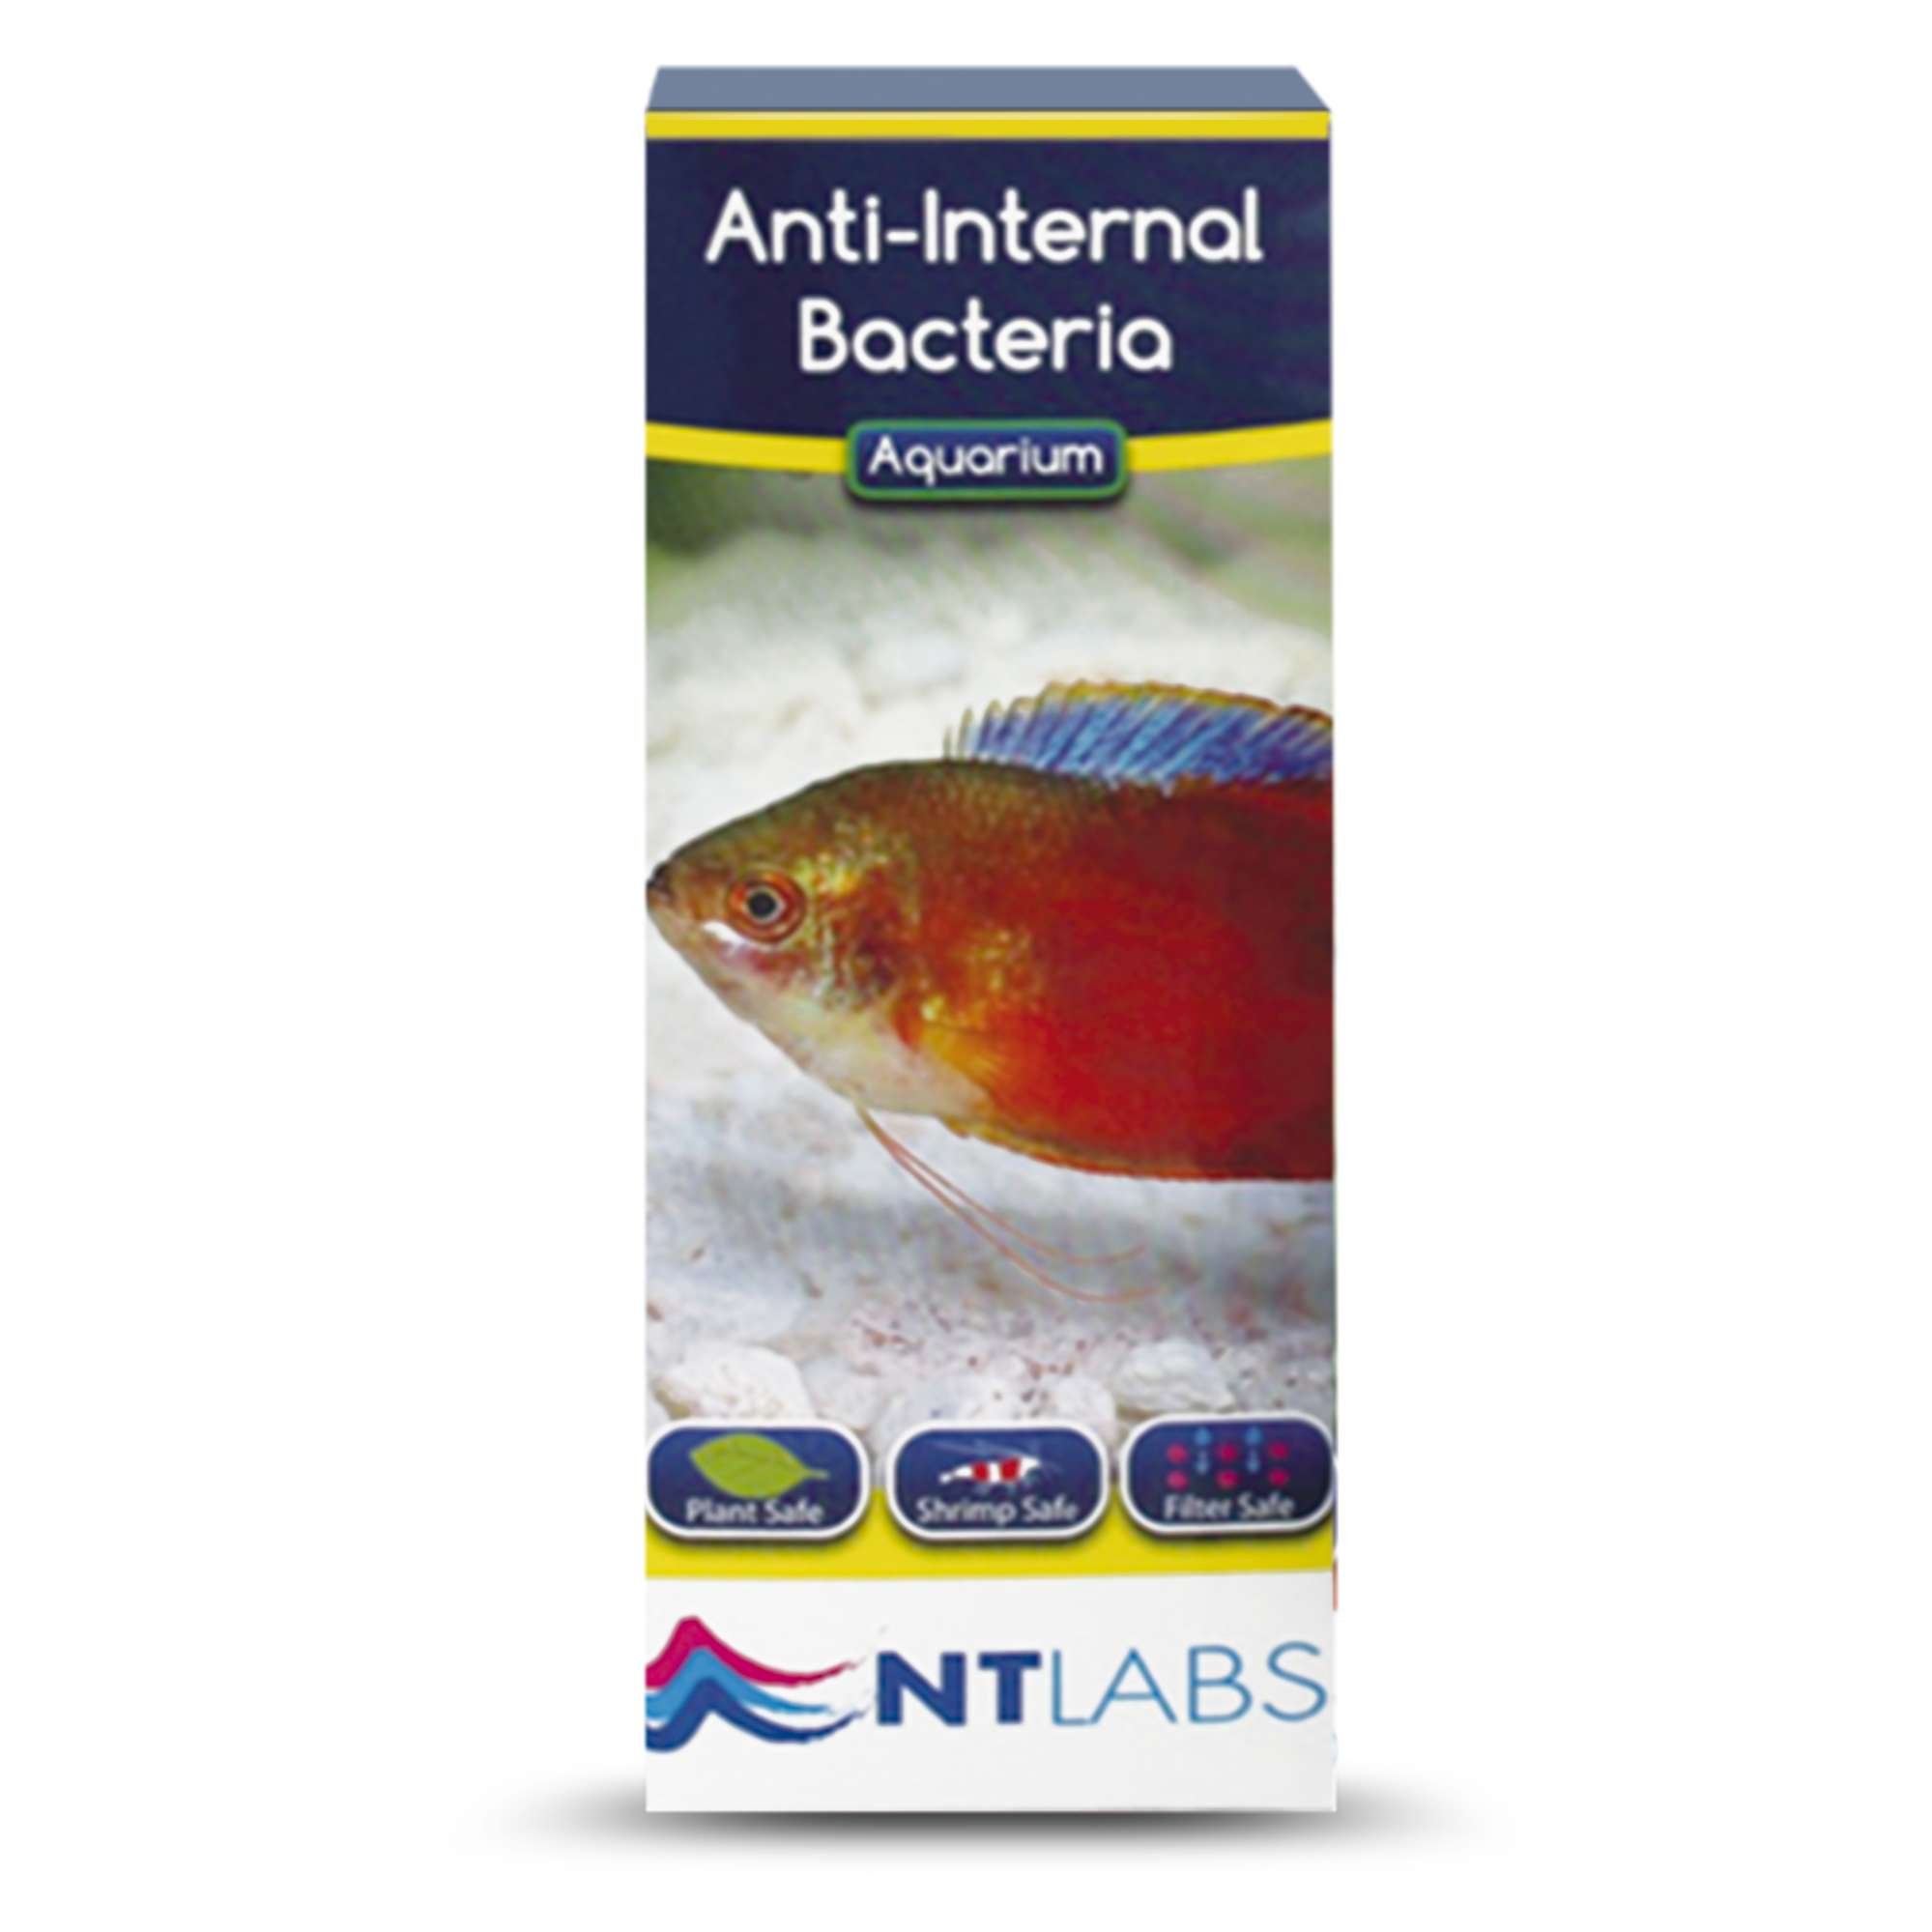 Remedio contra infecciones bacterianas: Anti-Internal Bacteria de NTLABS  (100 ml) — ICA S.A.